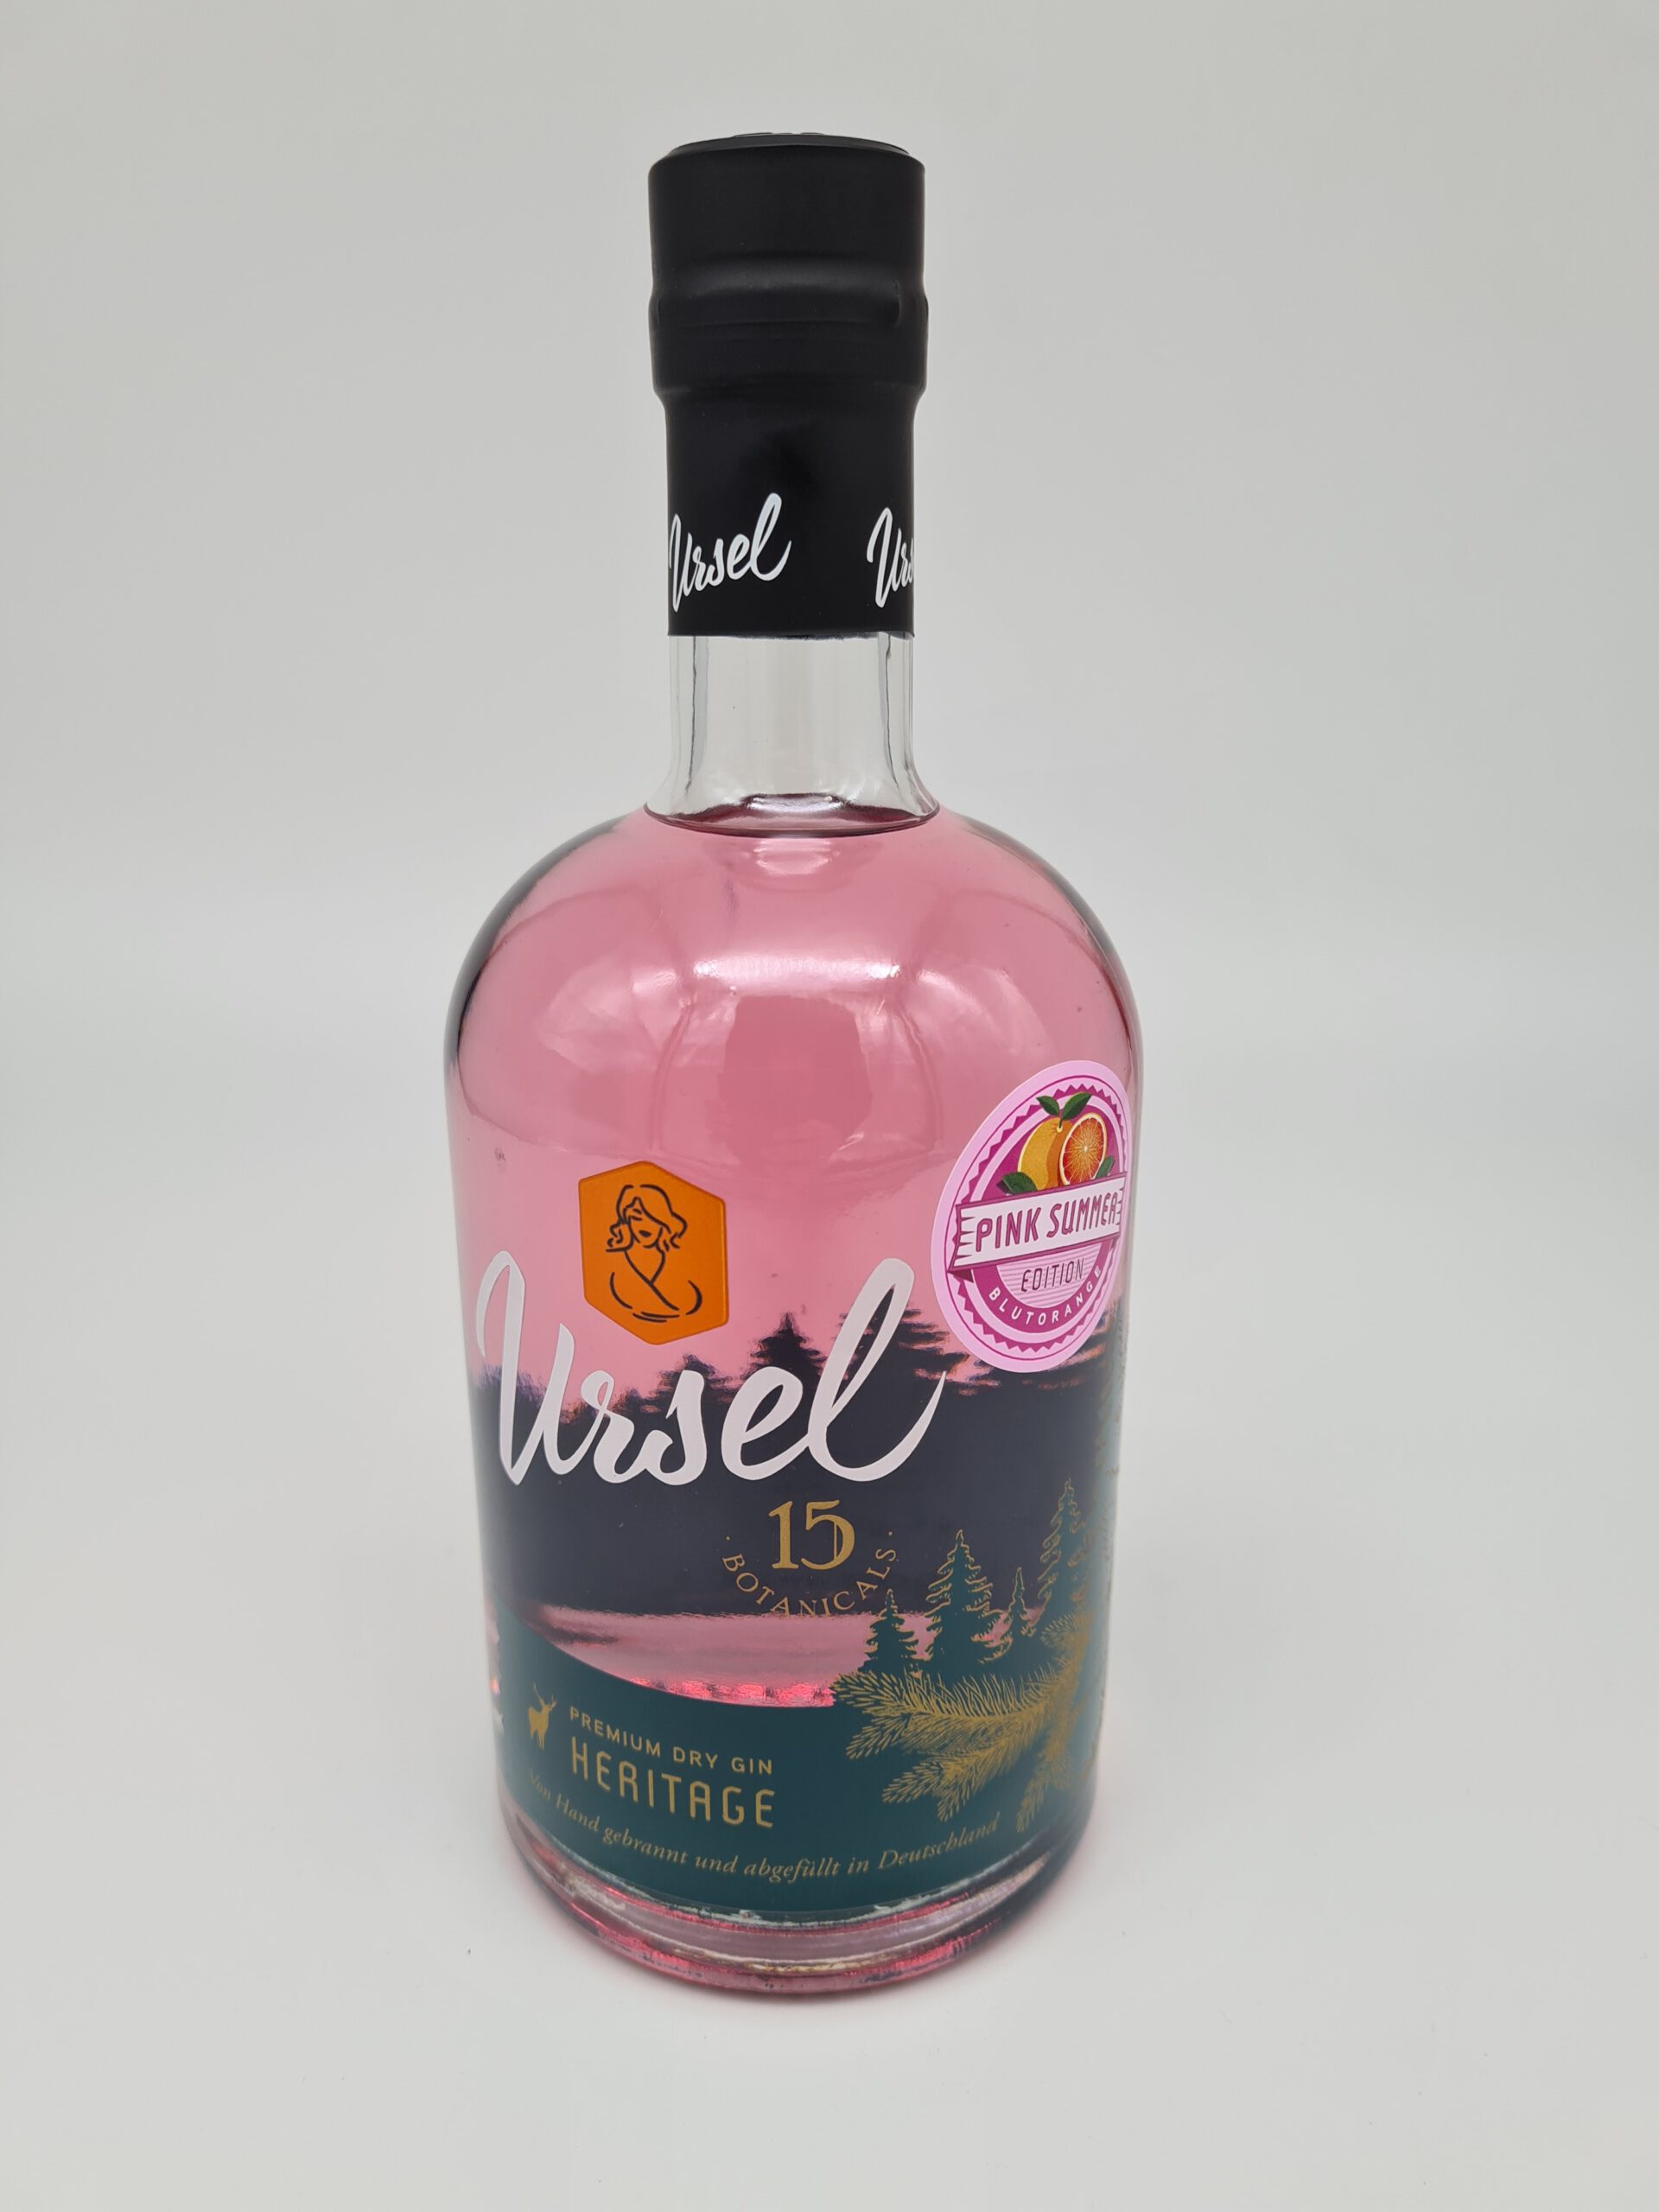 – Taunus Gin Premium Pink Blutorange Gin